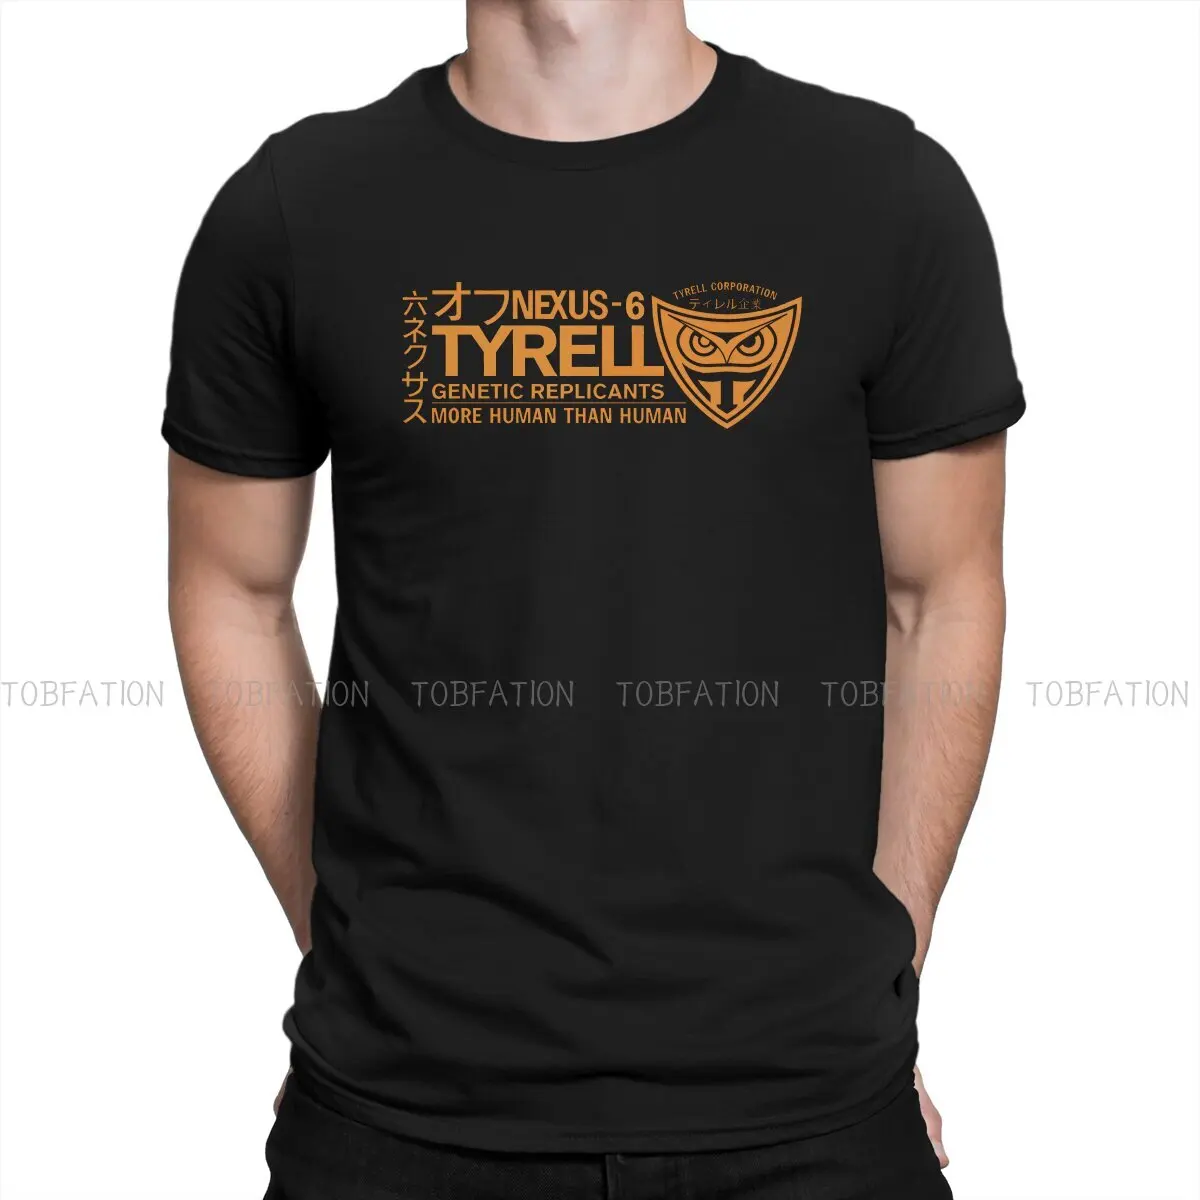 

Tyrell Nexus 6 Orange Unique TShirt Blade Runner Film 100% Cotton Hip Hop Graphic T Shirt Stuff Hot Sale